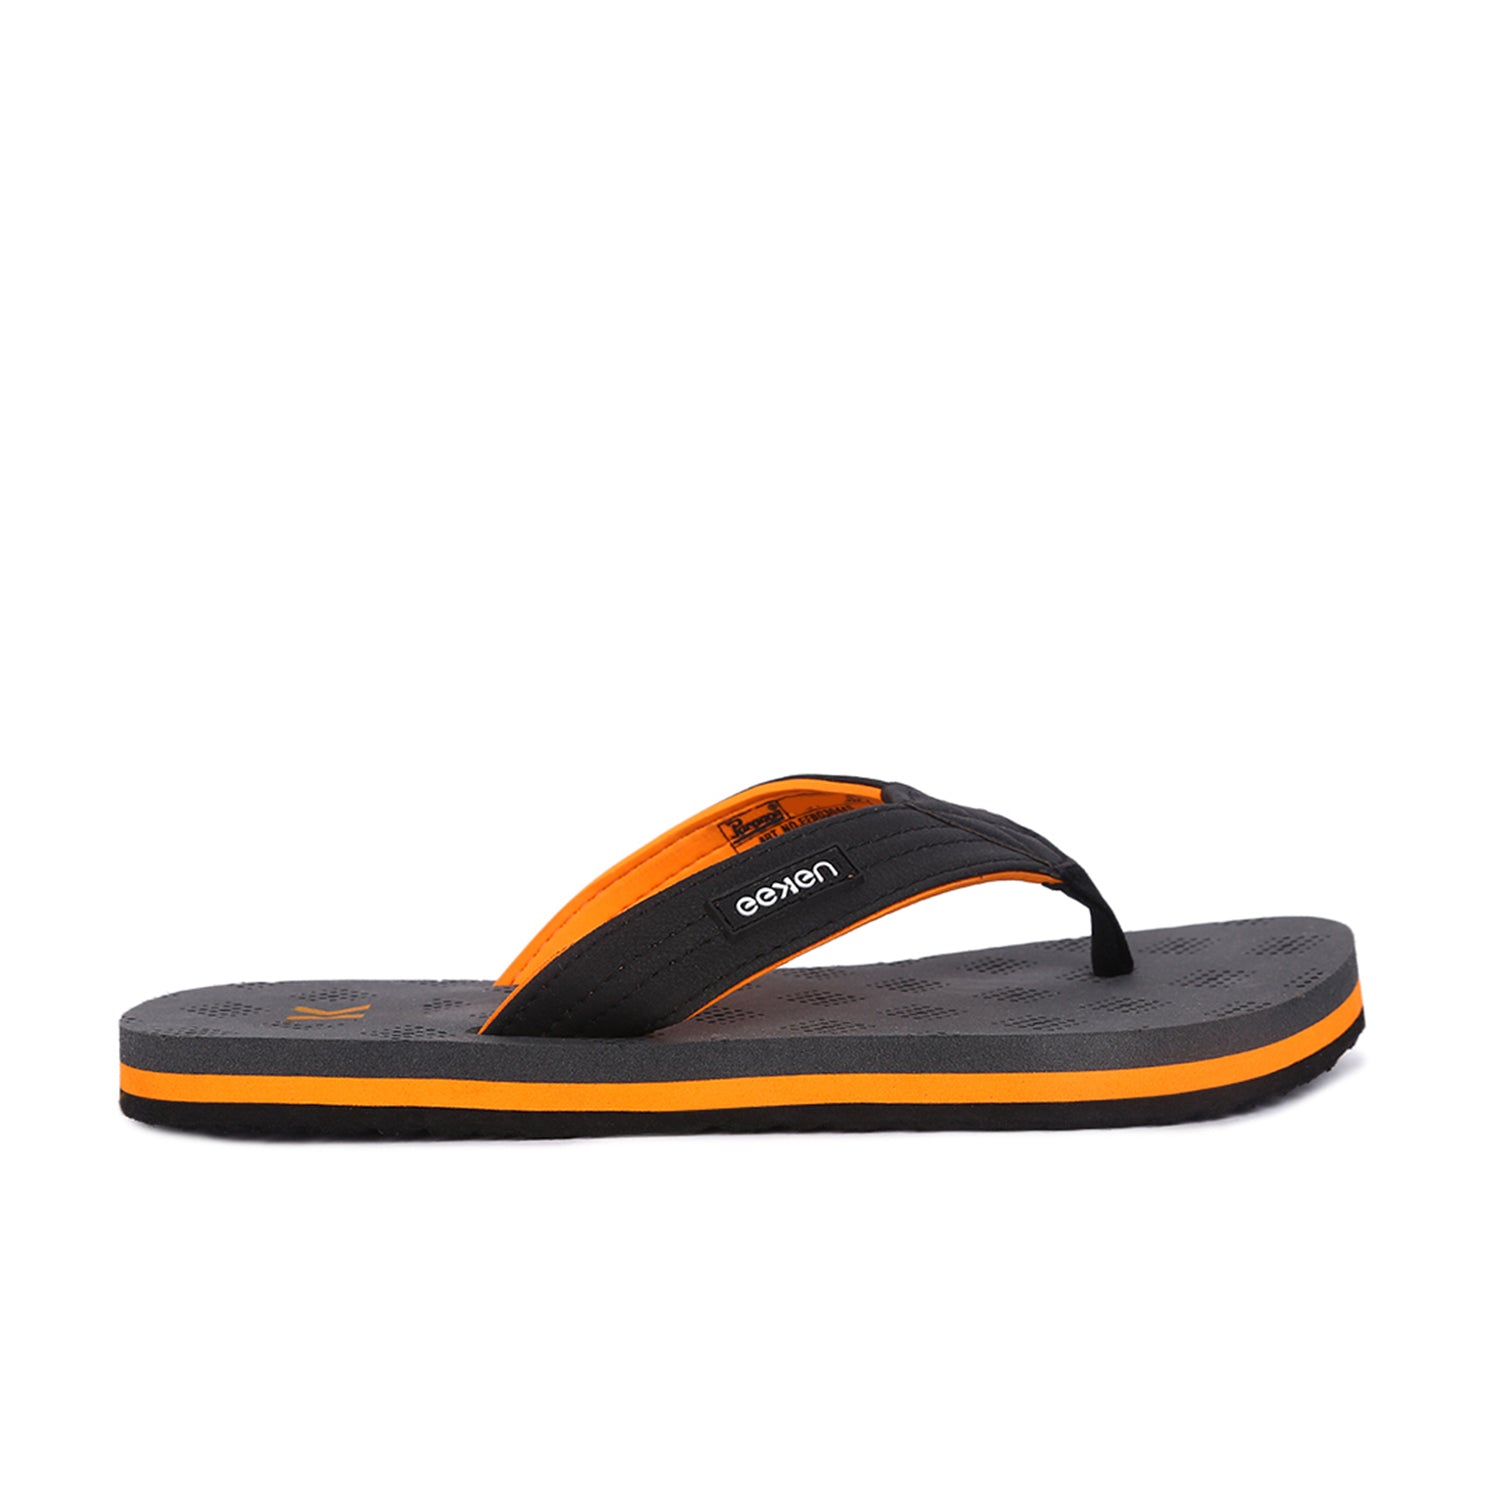 Eeken Ultra-Comfortable Lightweight Orange Casual Flip Flops For Men